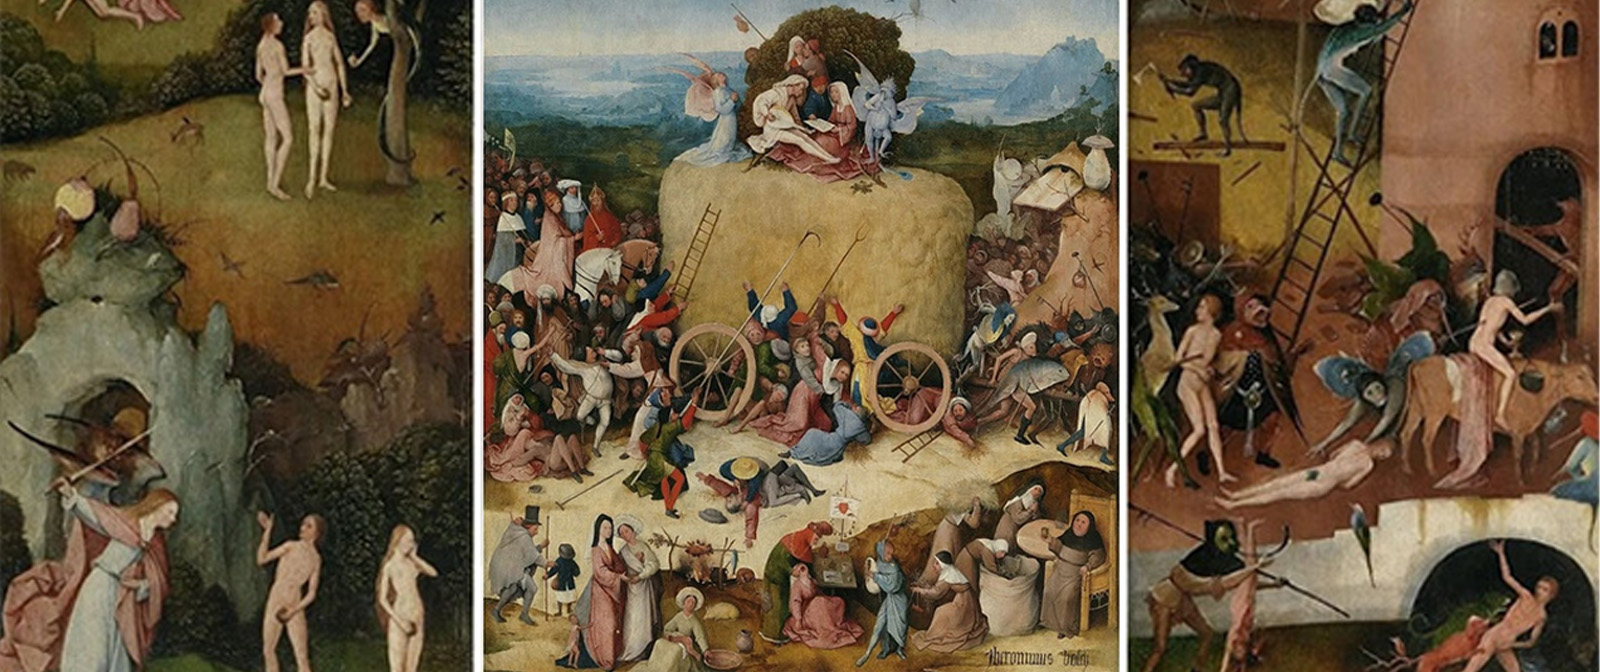 Воз сена» — удивительная картина Иеронима Босха об истинной природе зла.  Какие глубокие смыслы заложил в